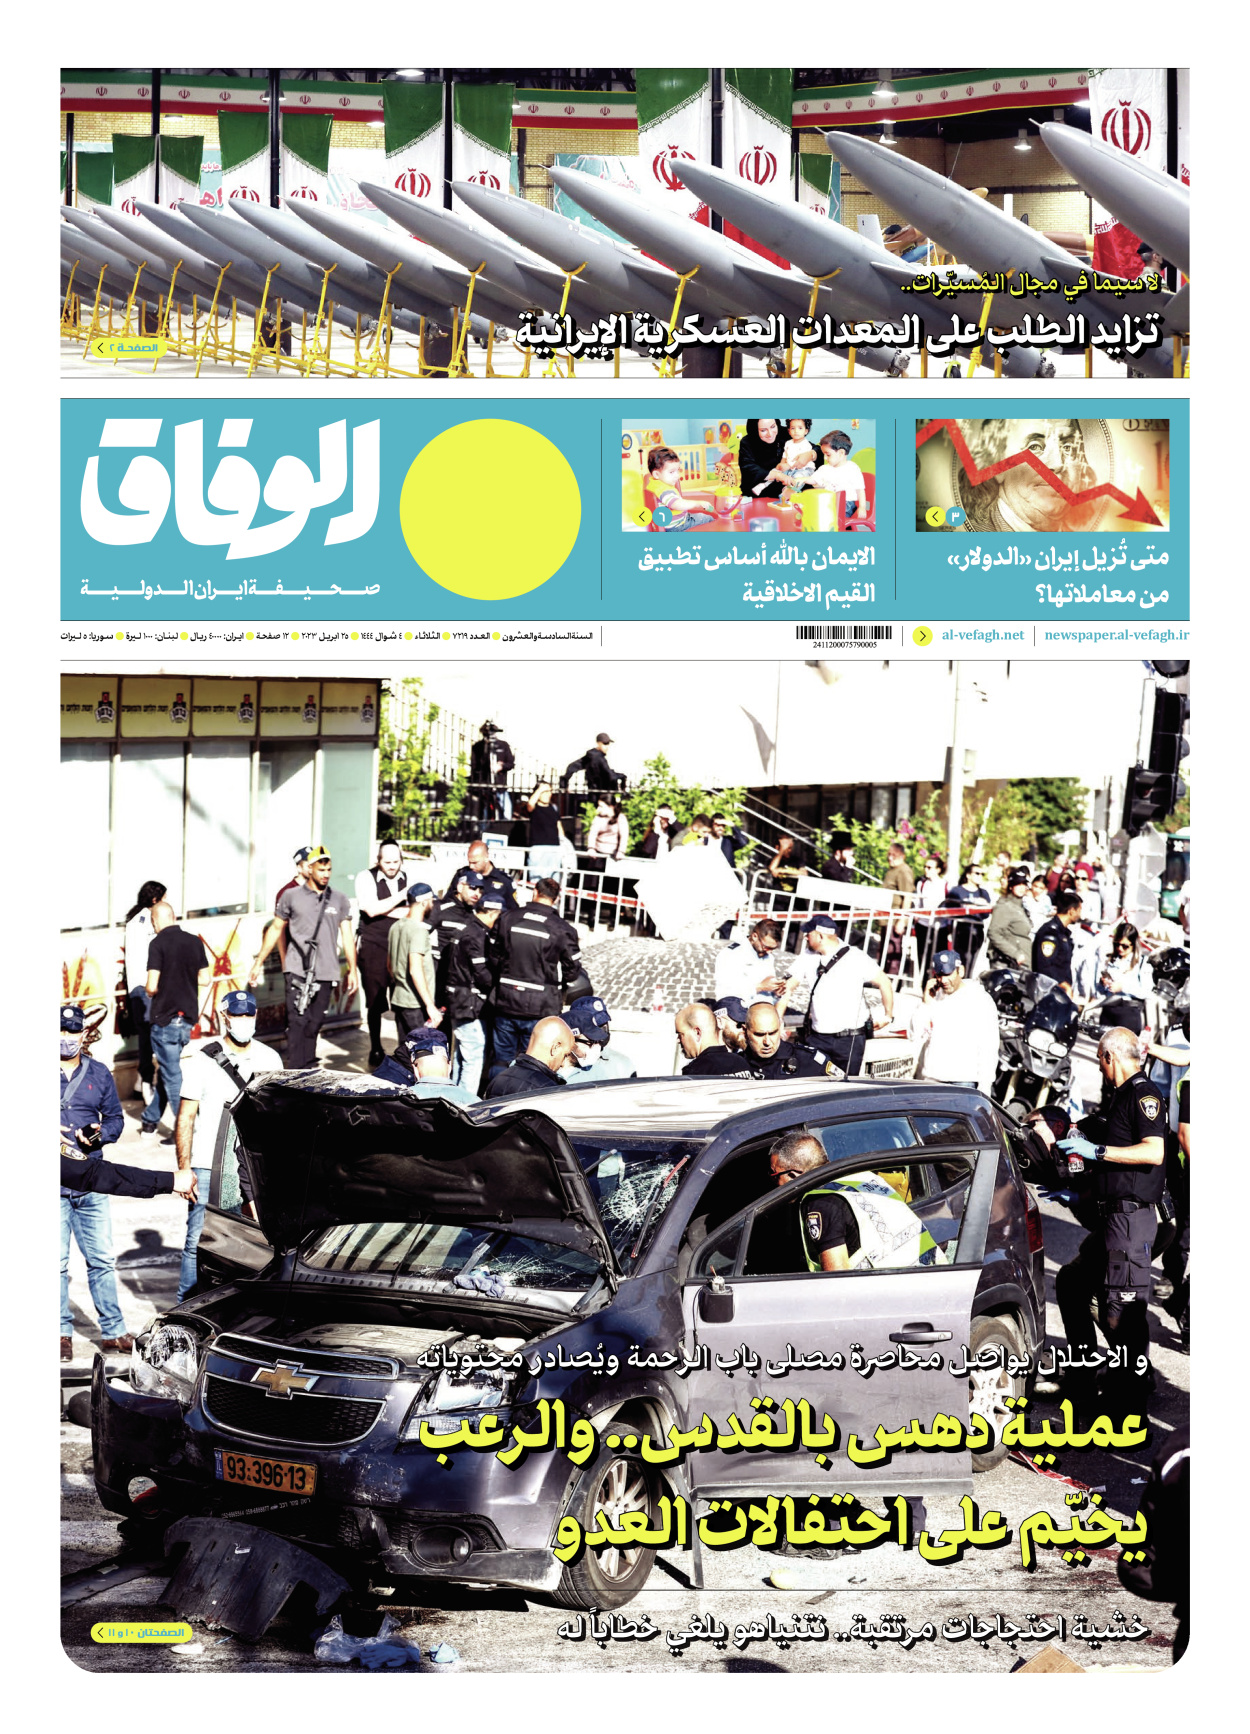 صحیفة ایران الدولیة الوفاق - العدد سبعة آلاف ومائتان وتسعة عشر - ٢٥ أبريل ٢٠٢٣ - الصفحة ۱